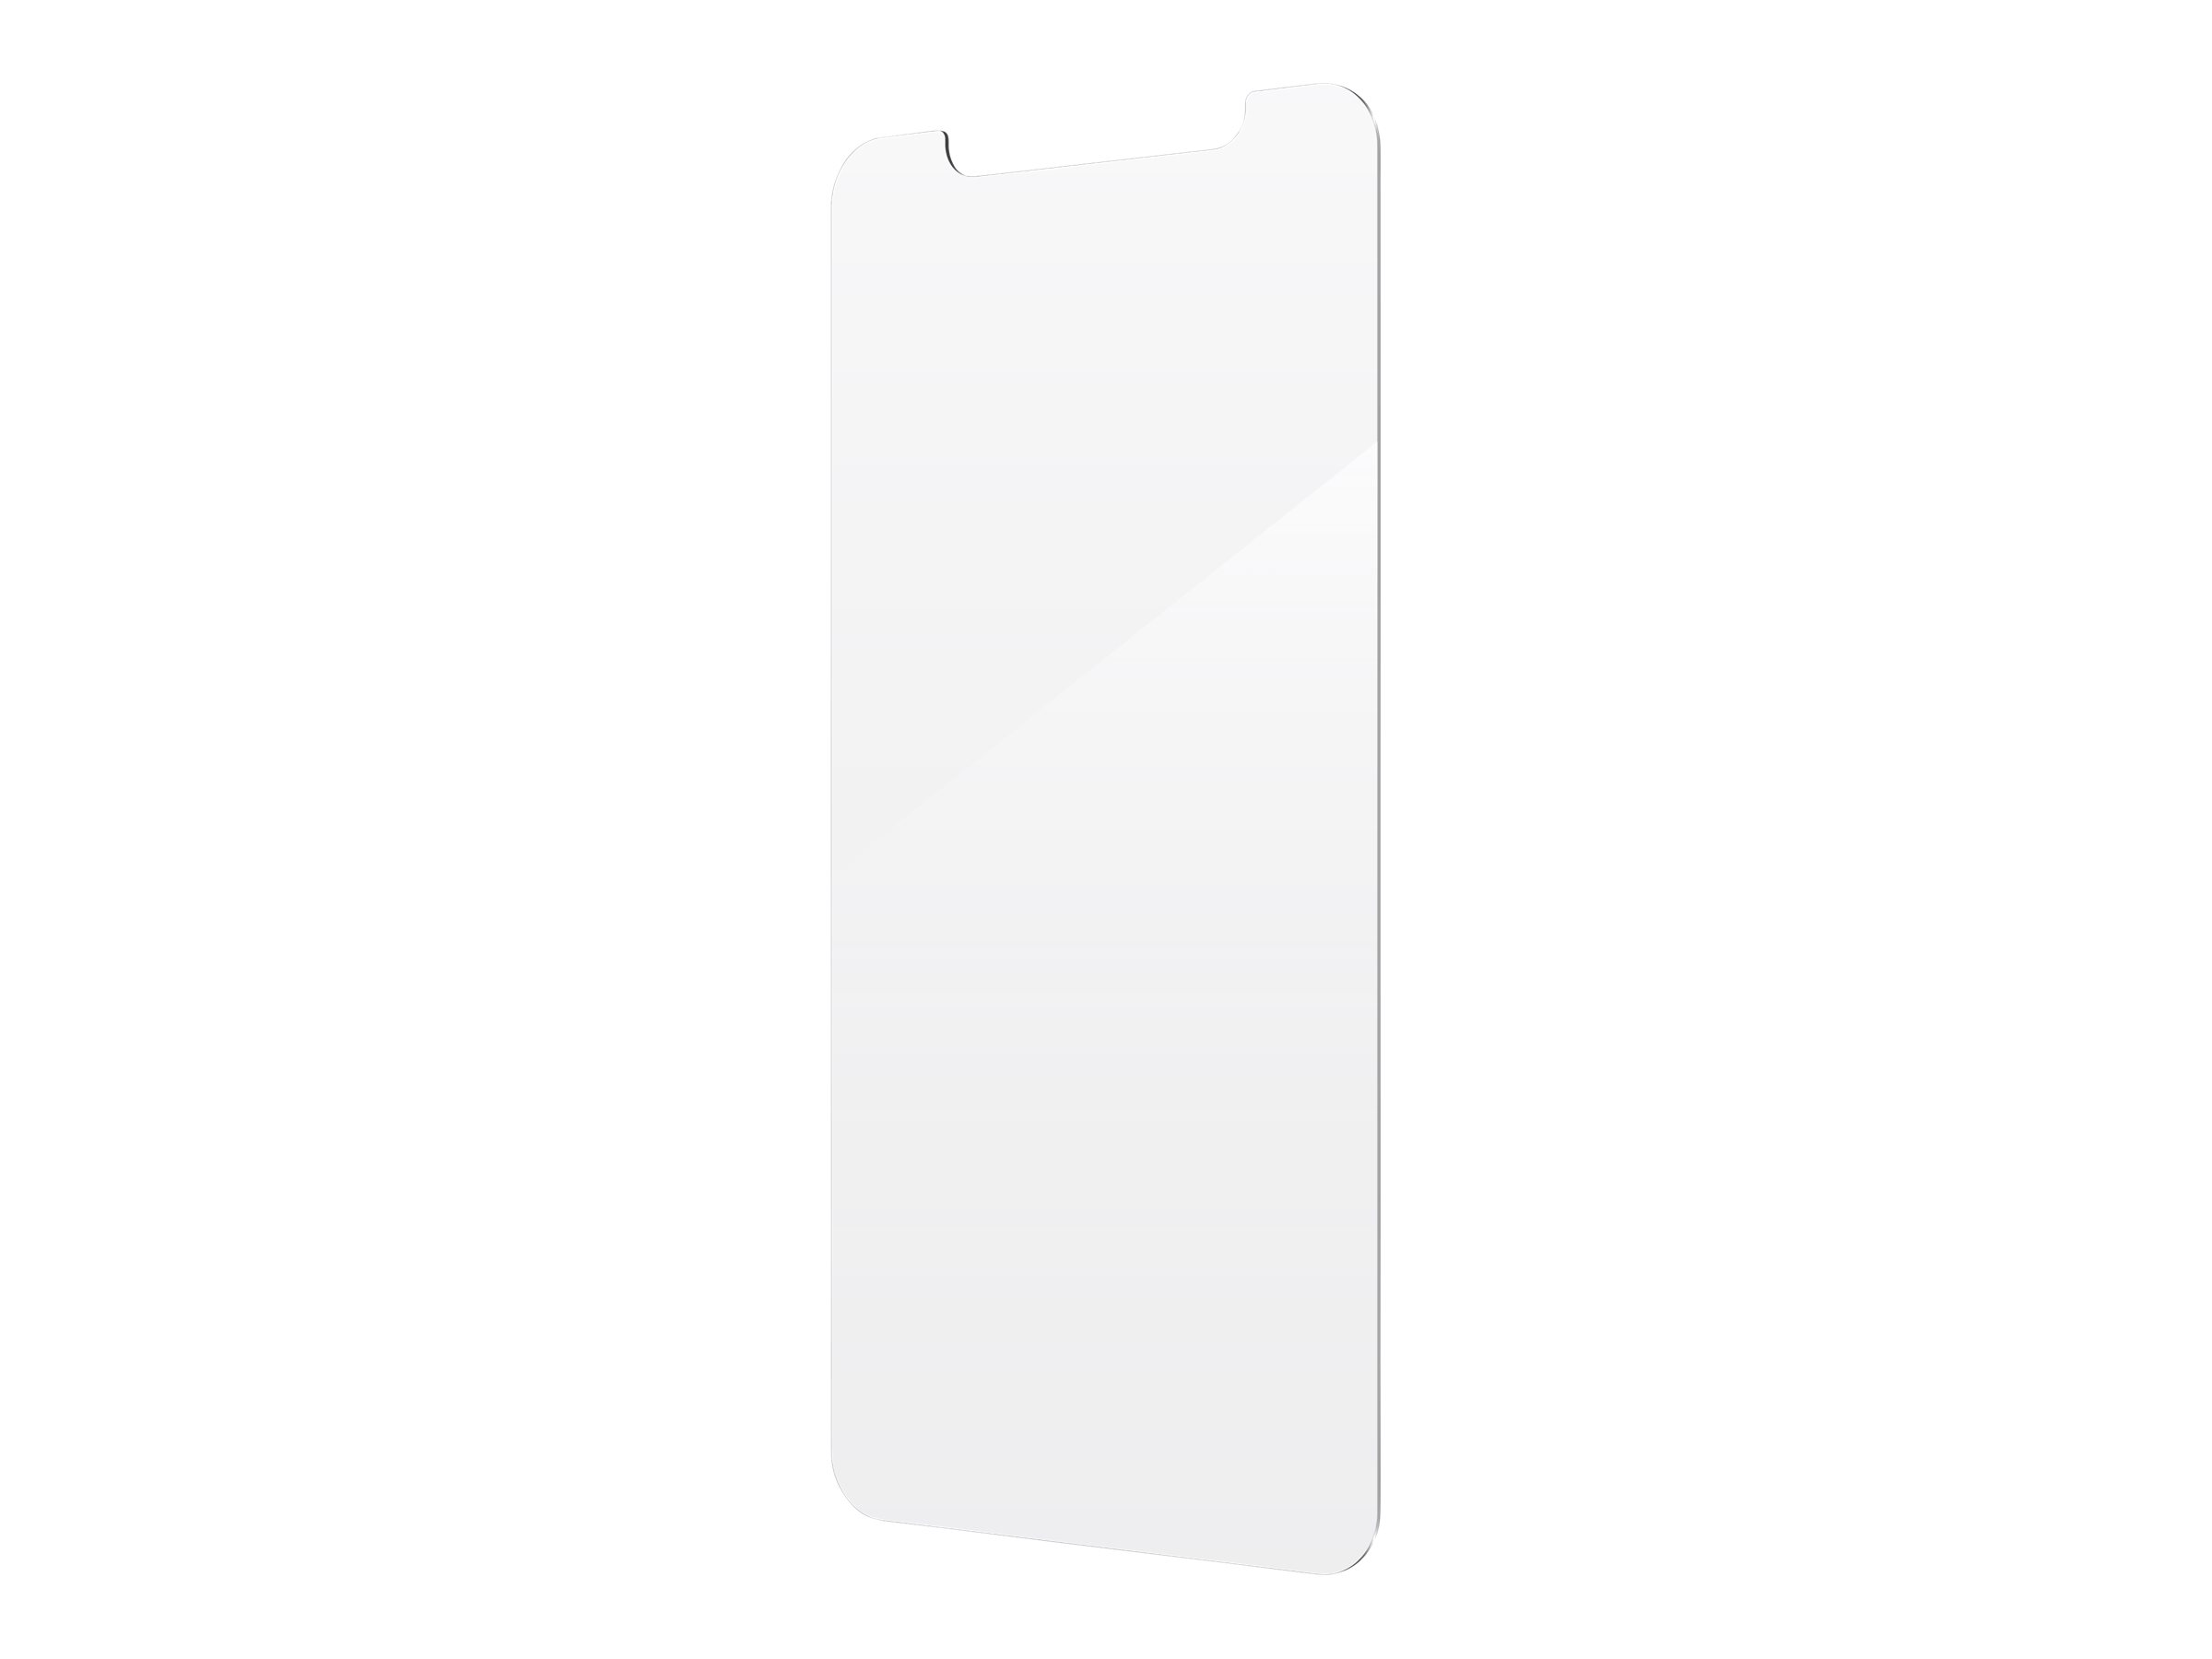 ZAGG InvisibleShield Glass Elite+ - Bildschirmschutz für Handy